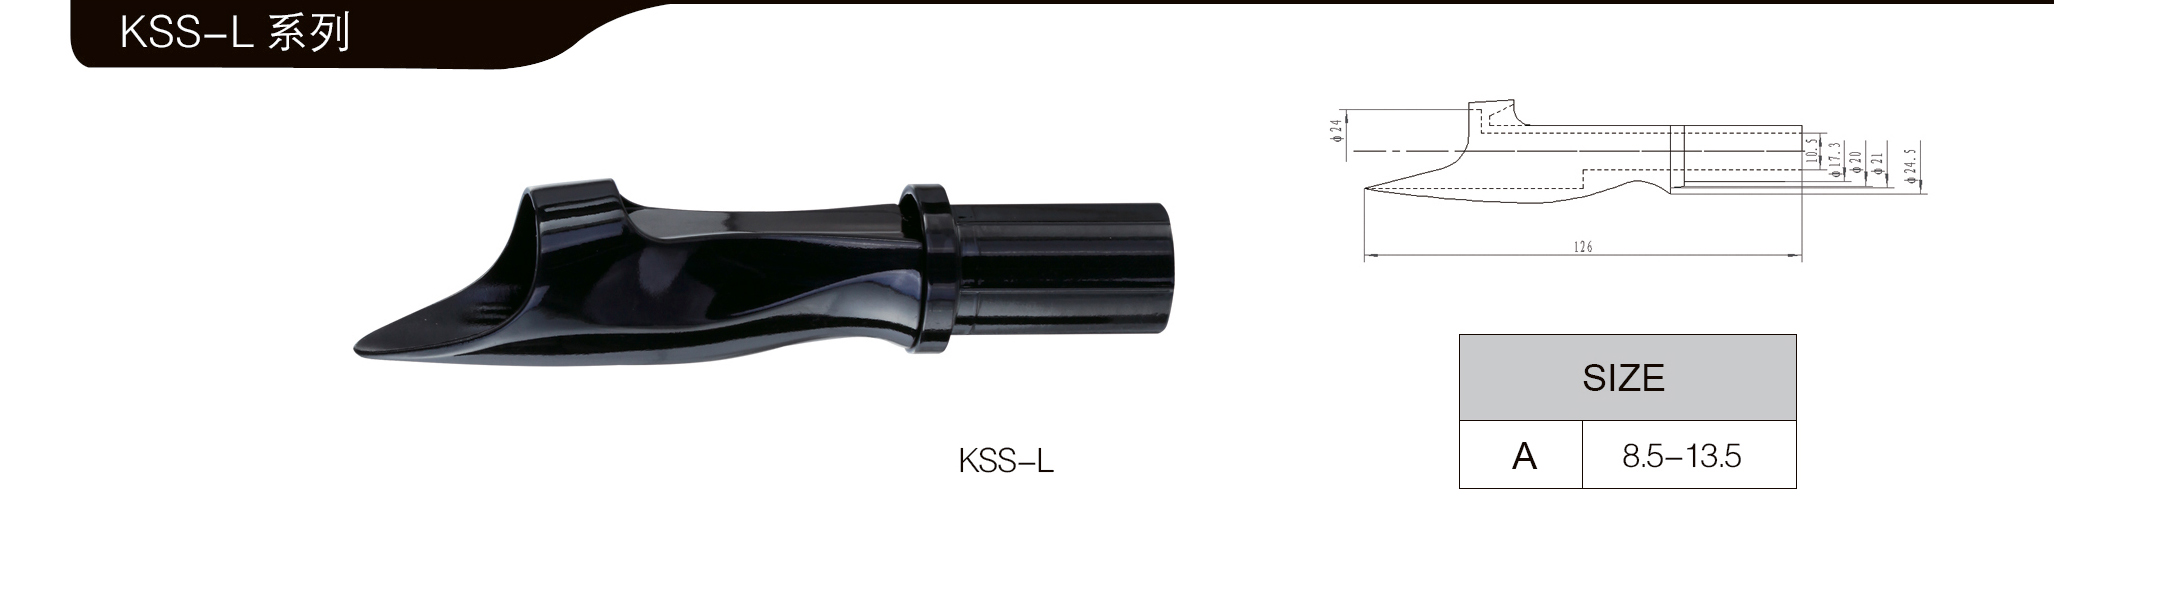 KSS-L02.jpg